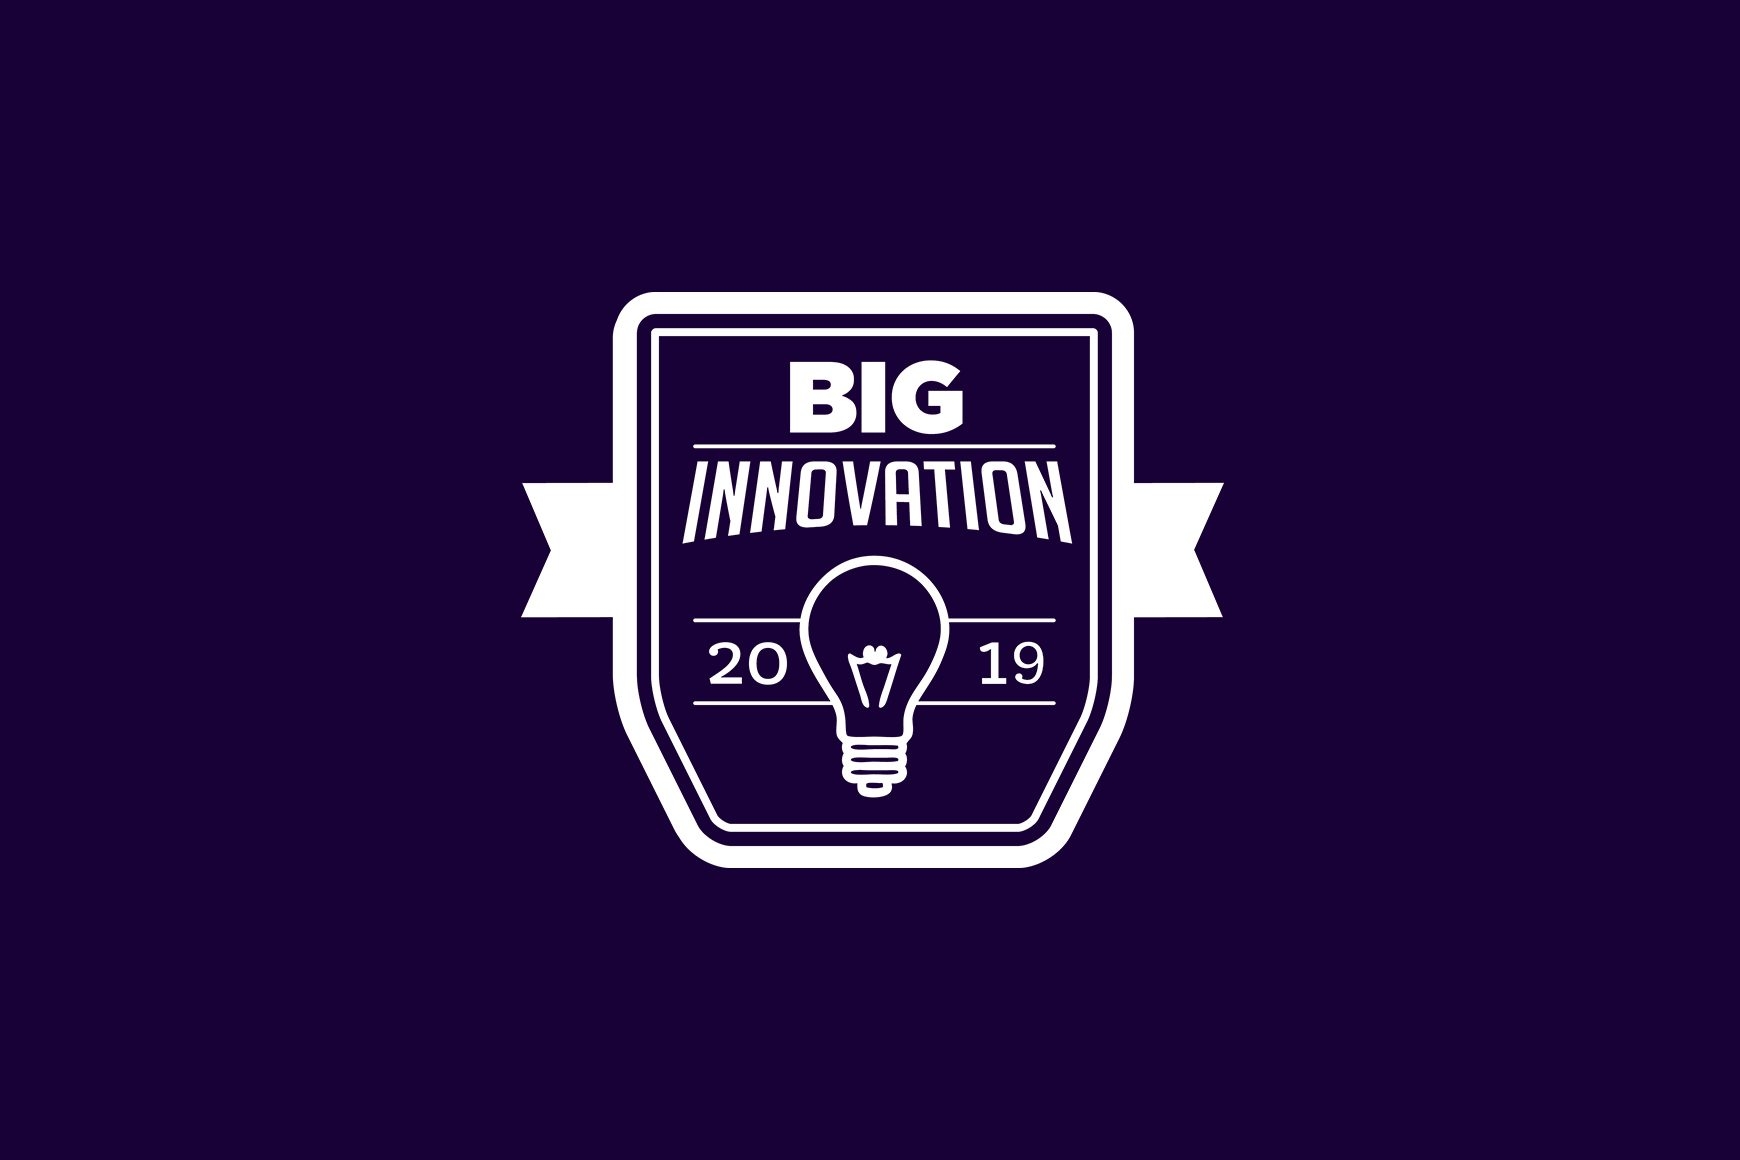 Talkdesk wins 2019 BIG Innovation Award